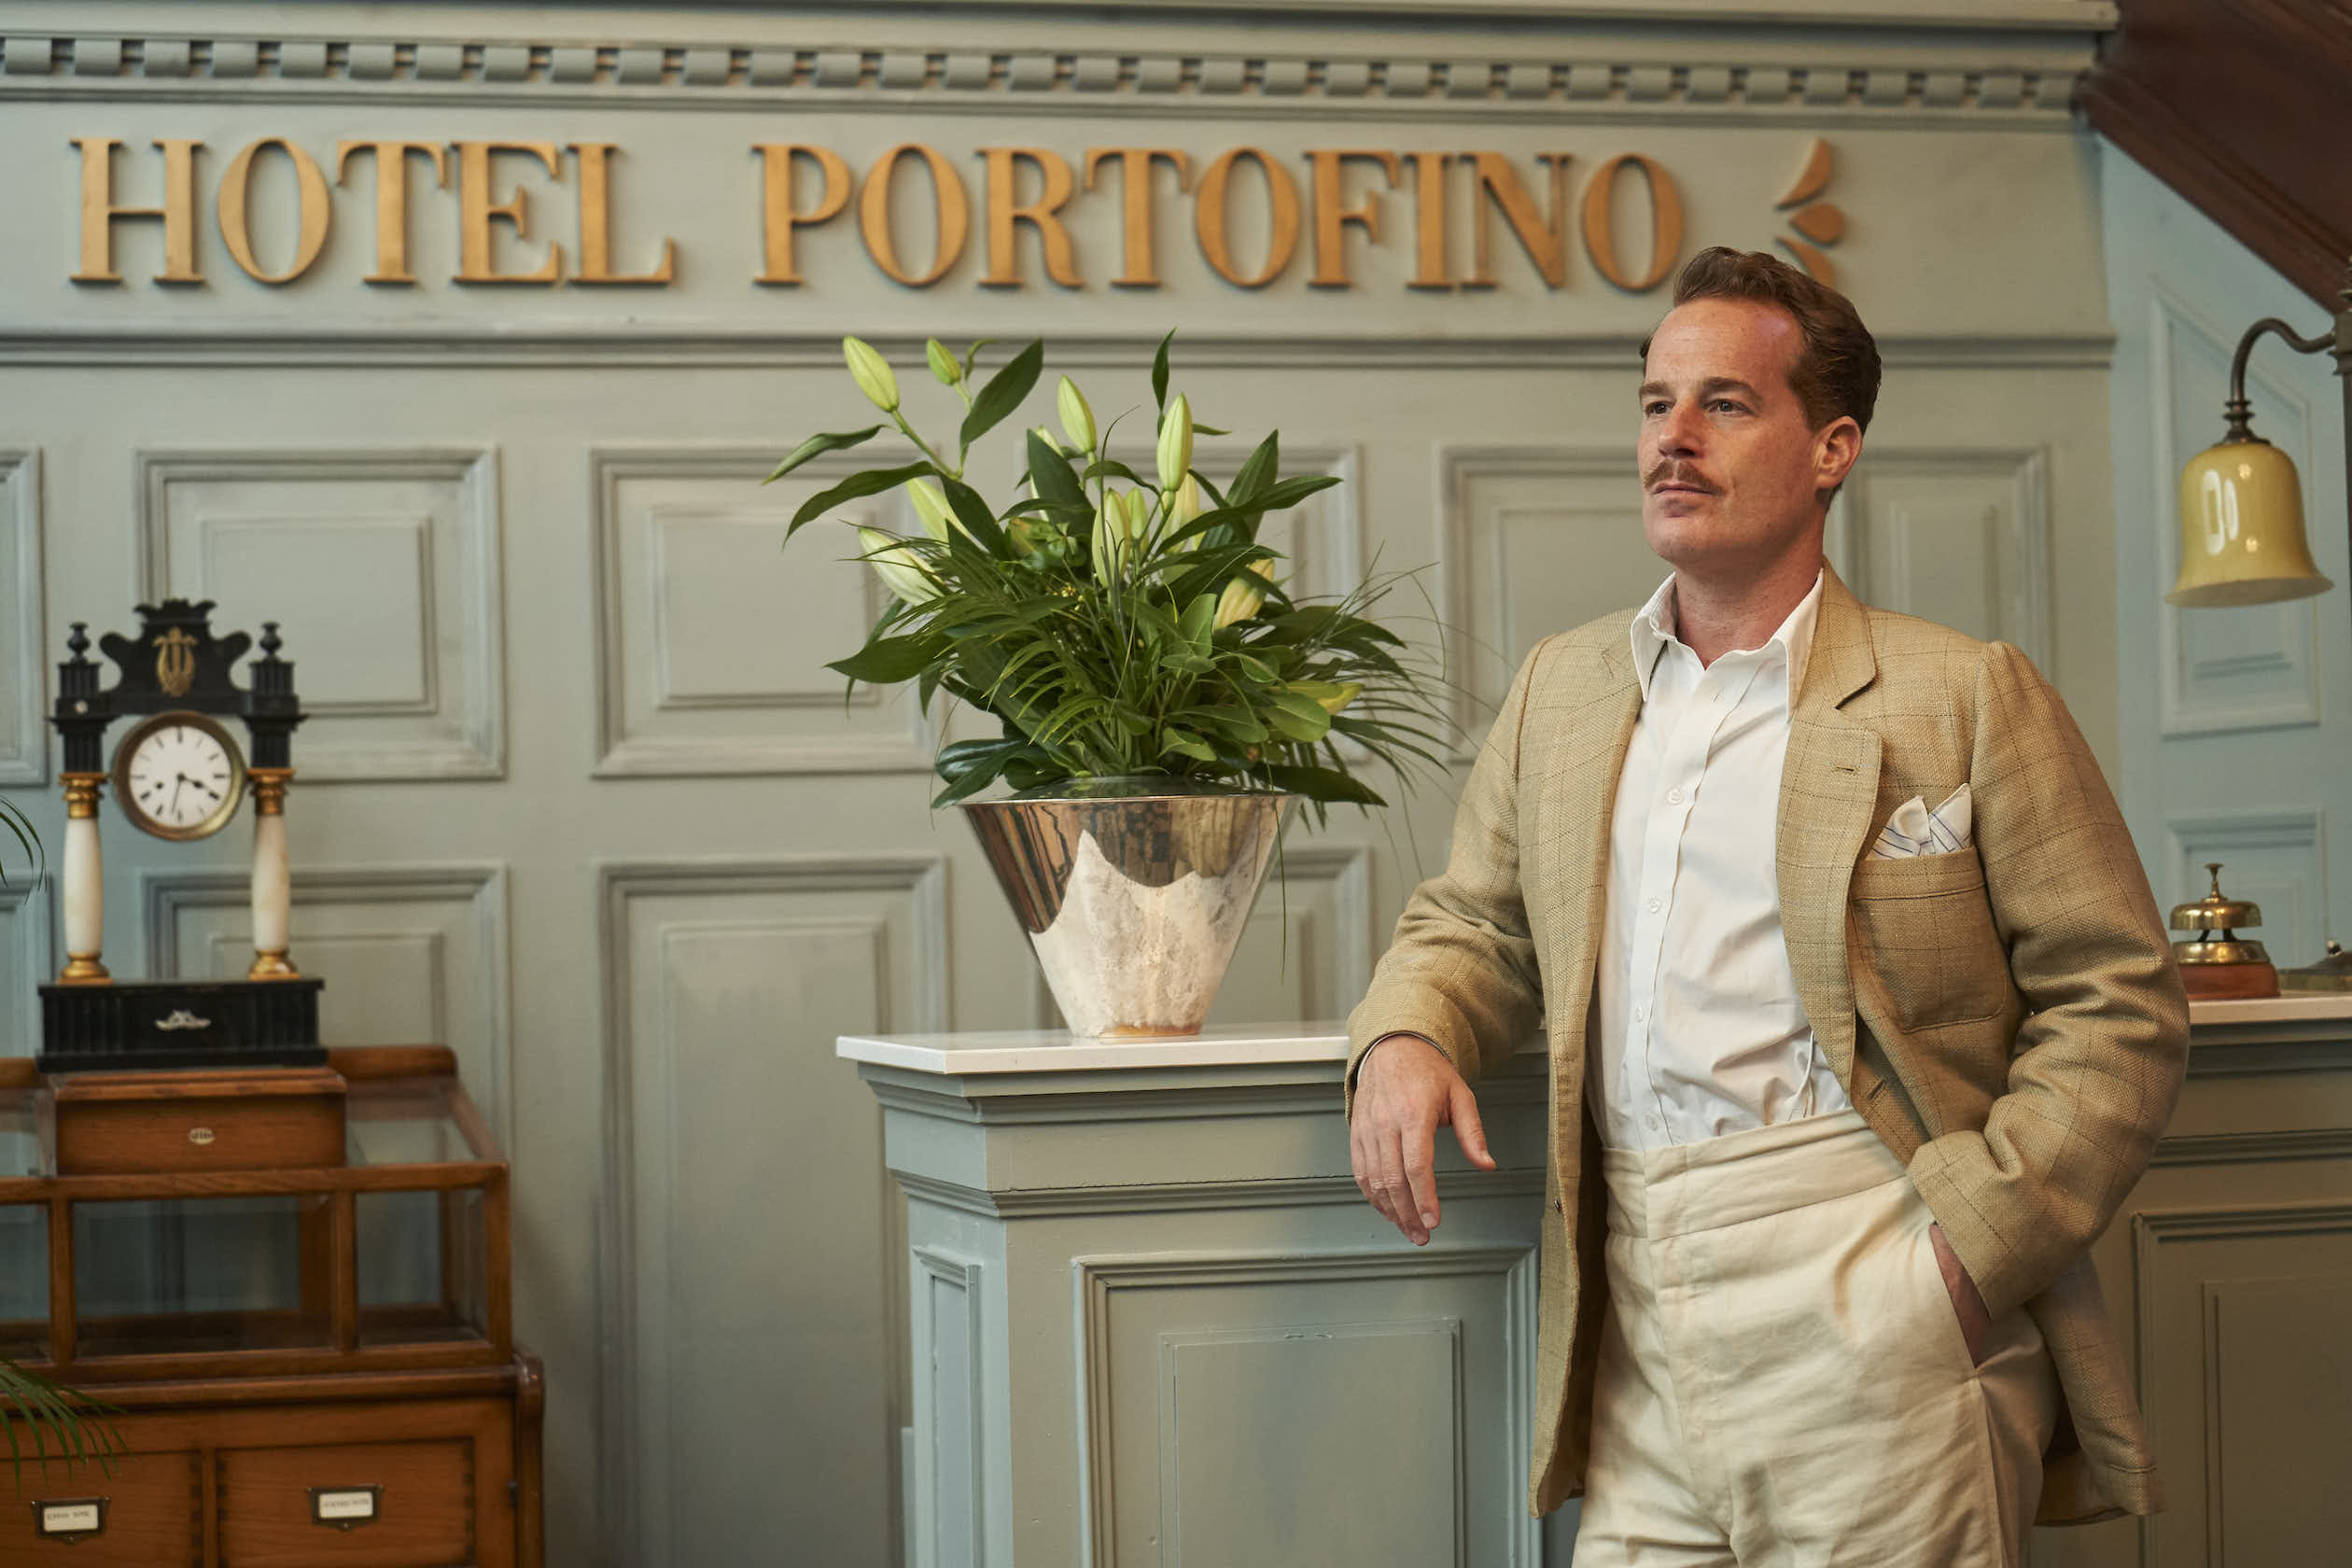 Hotel Portofino ab 26. Januar auf Magenta TV